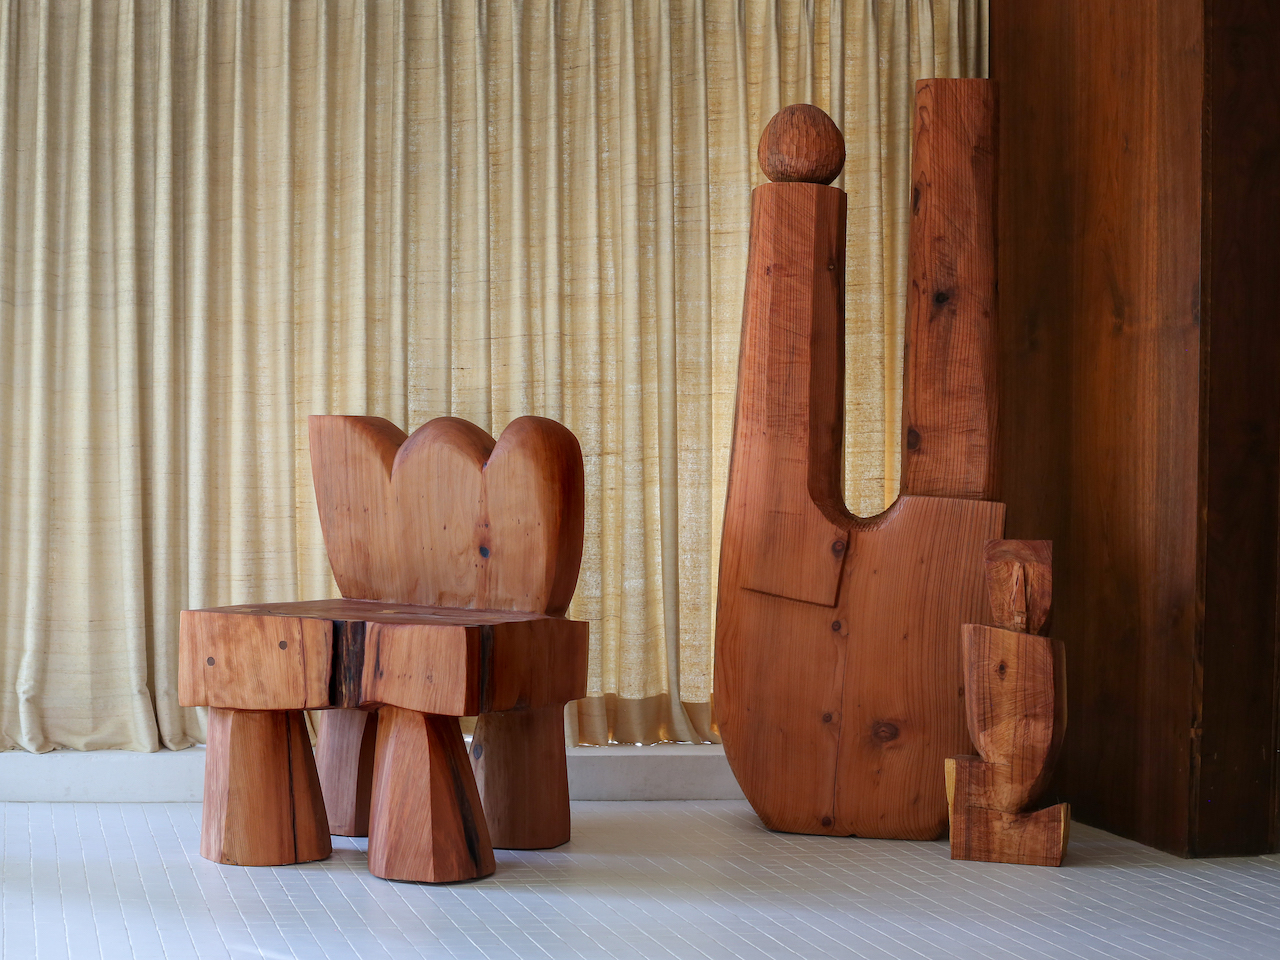 Tìm cảm hứng cho thiết kế chạm khắc gỗ của bạn